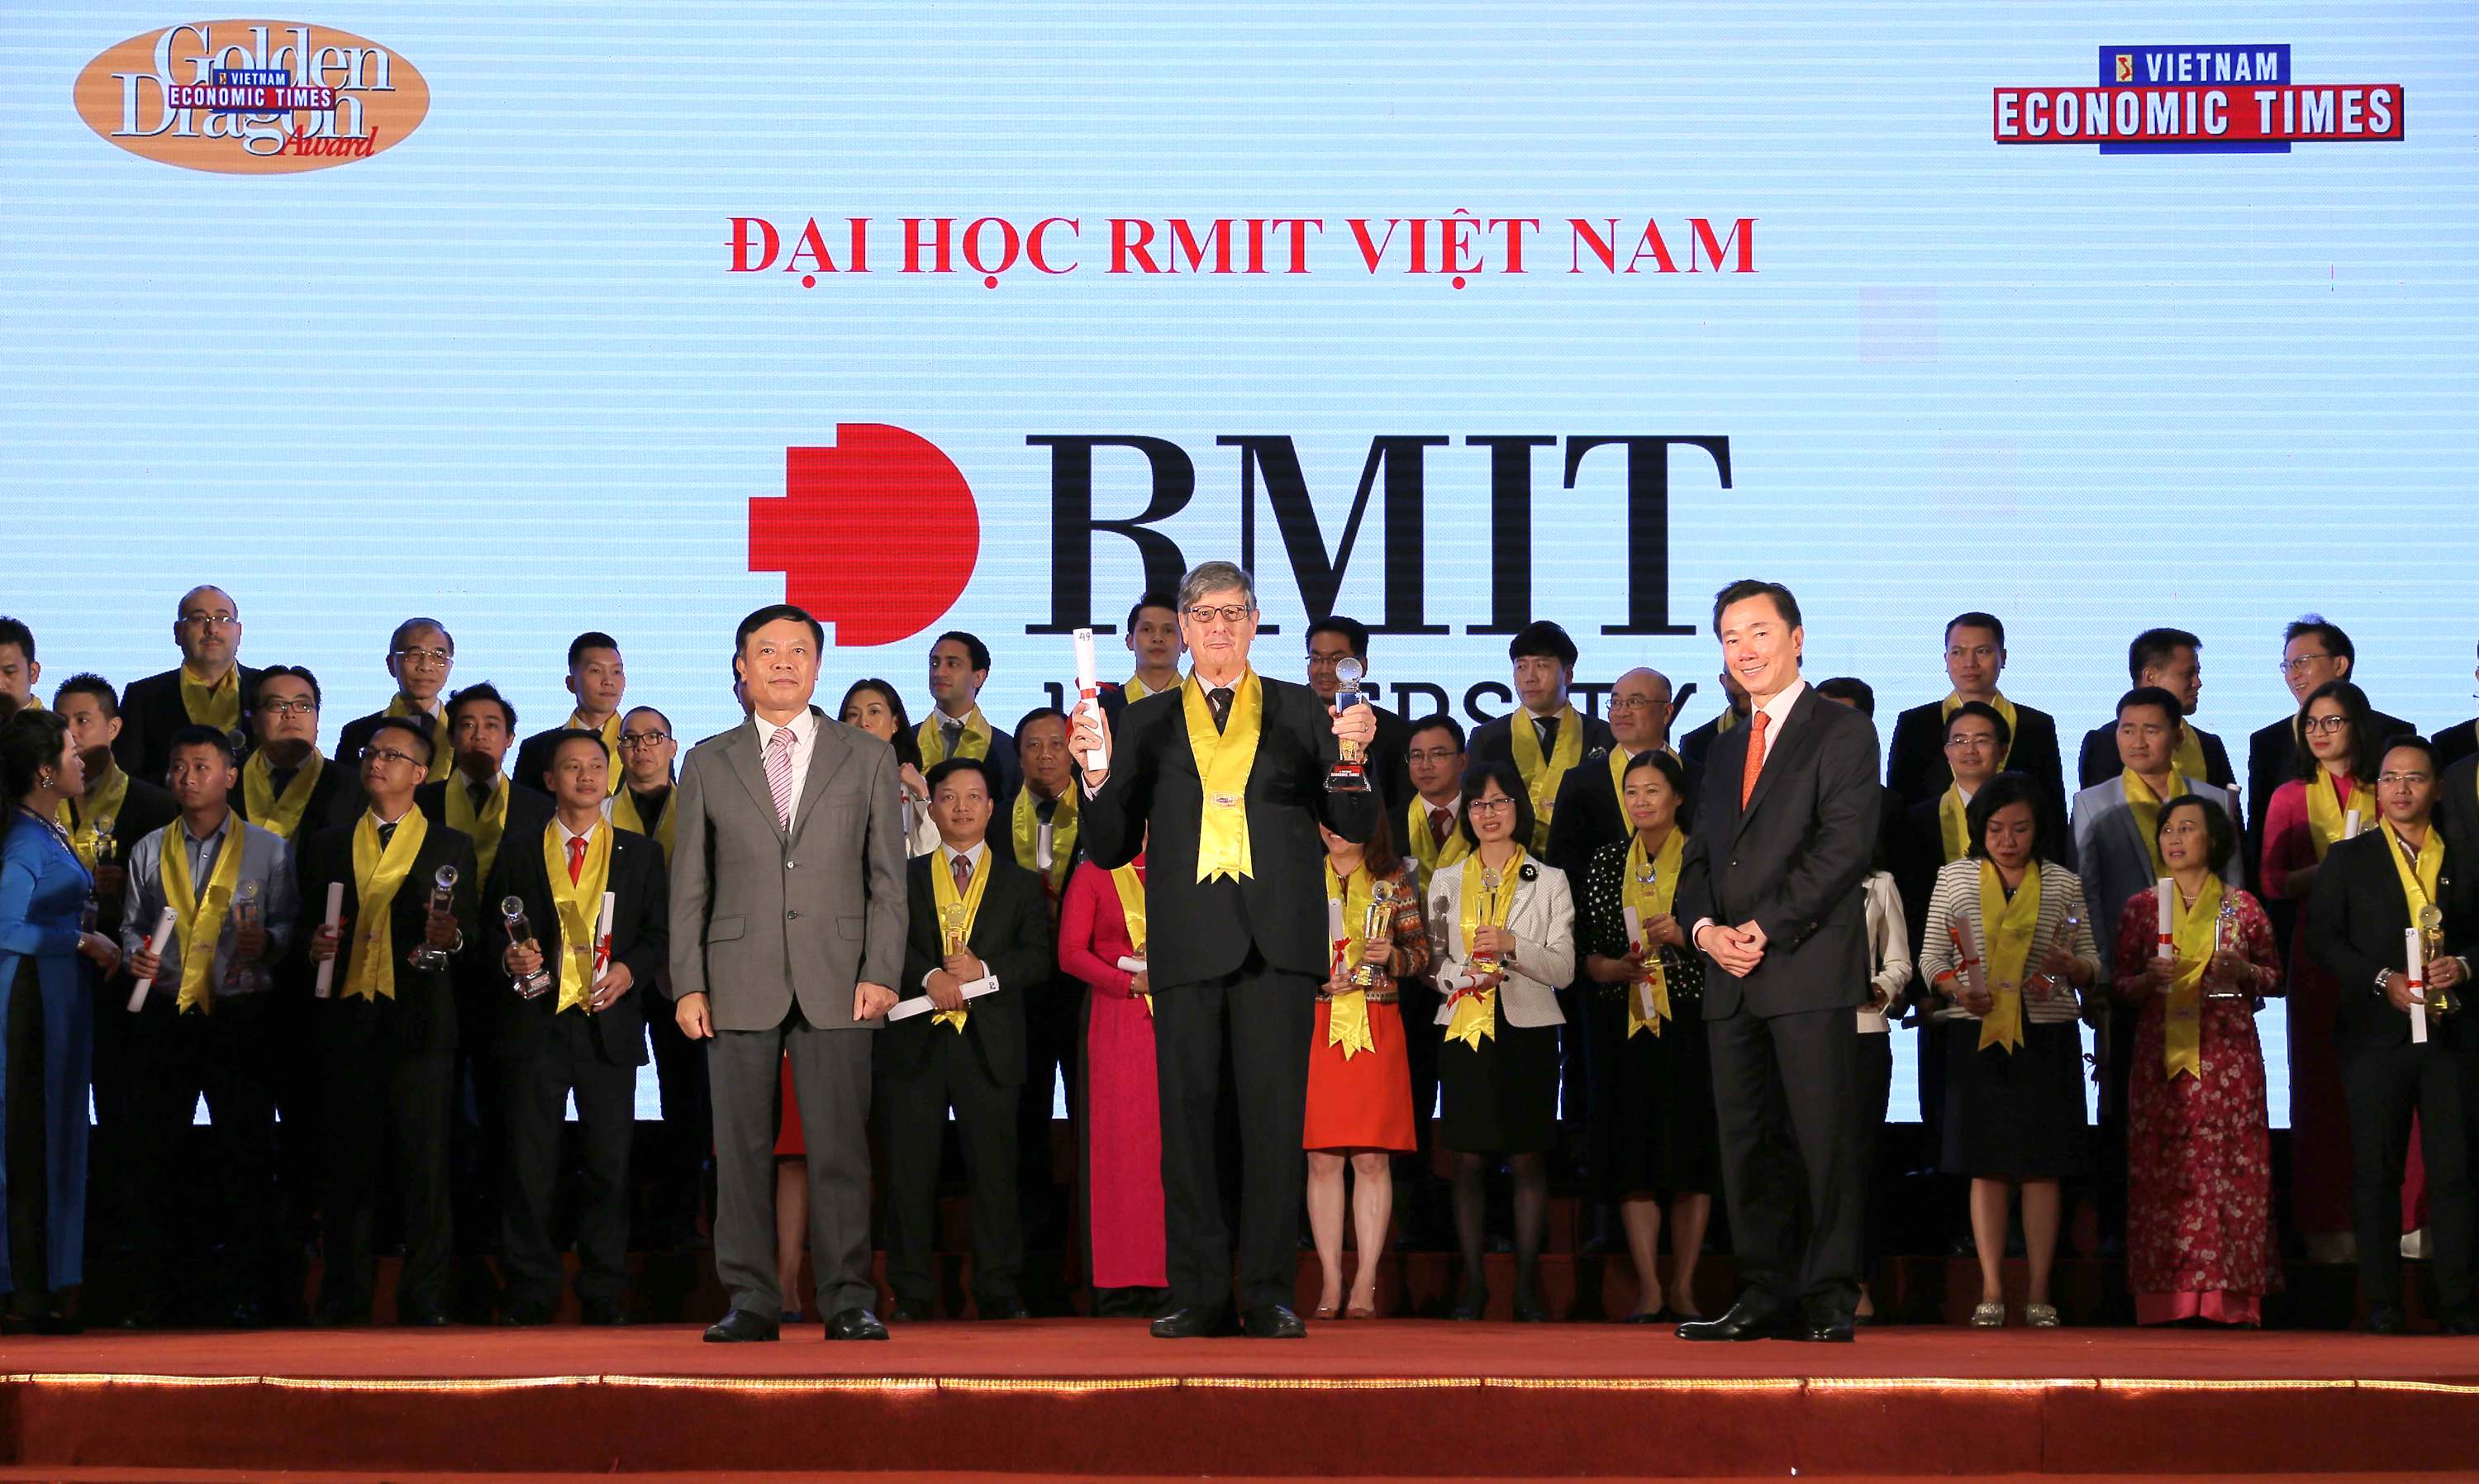 Giám đốc Bộ phận Truyền thông và Sự kiện, Đại học RMIT Việt Nam, ông Conrad Ożóg đã nhận giải Rồng Vàng tại buổi lễ vào ngày 8/4/2017.